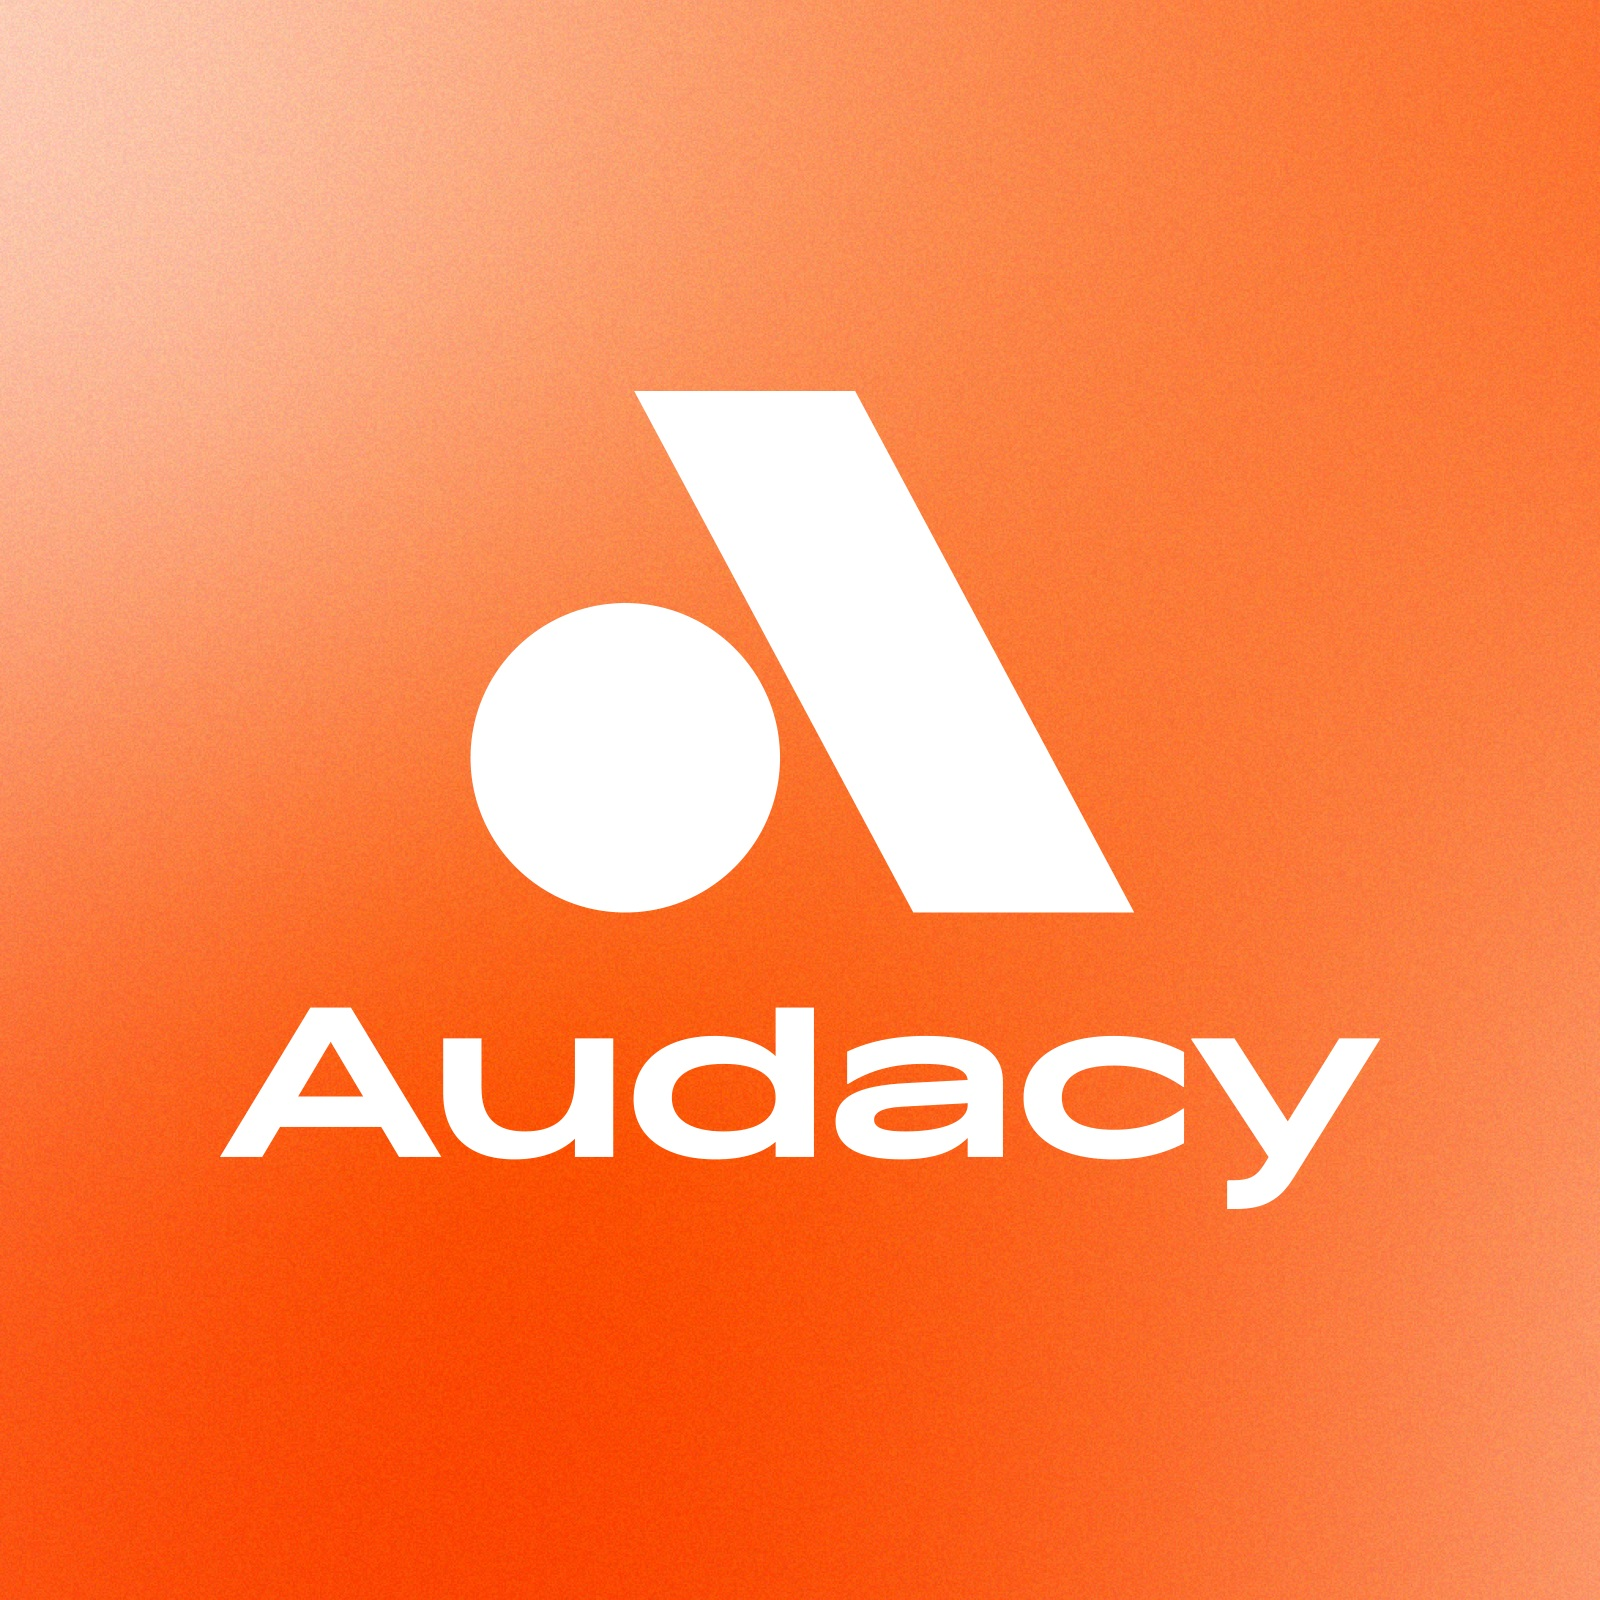 Audacy Archive